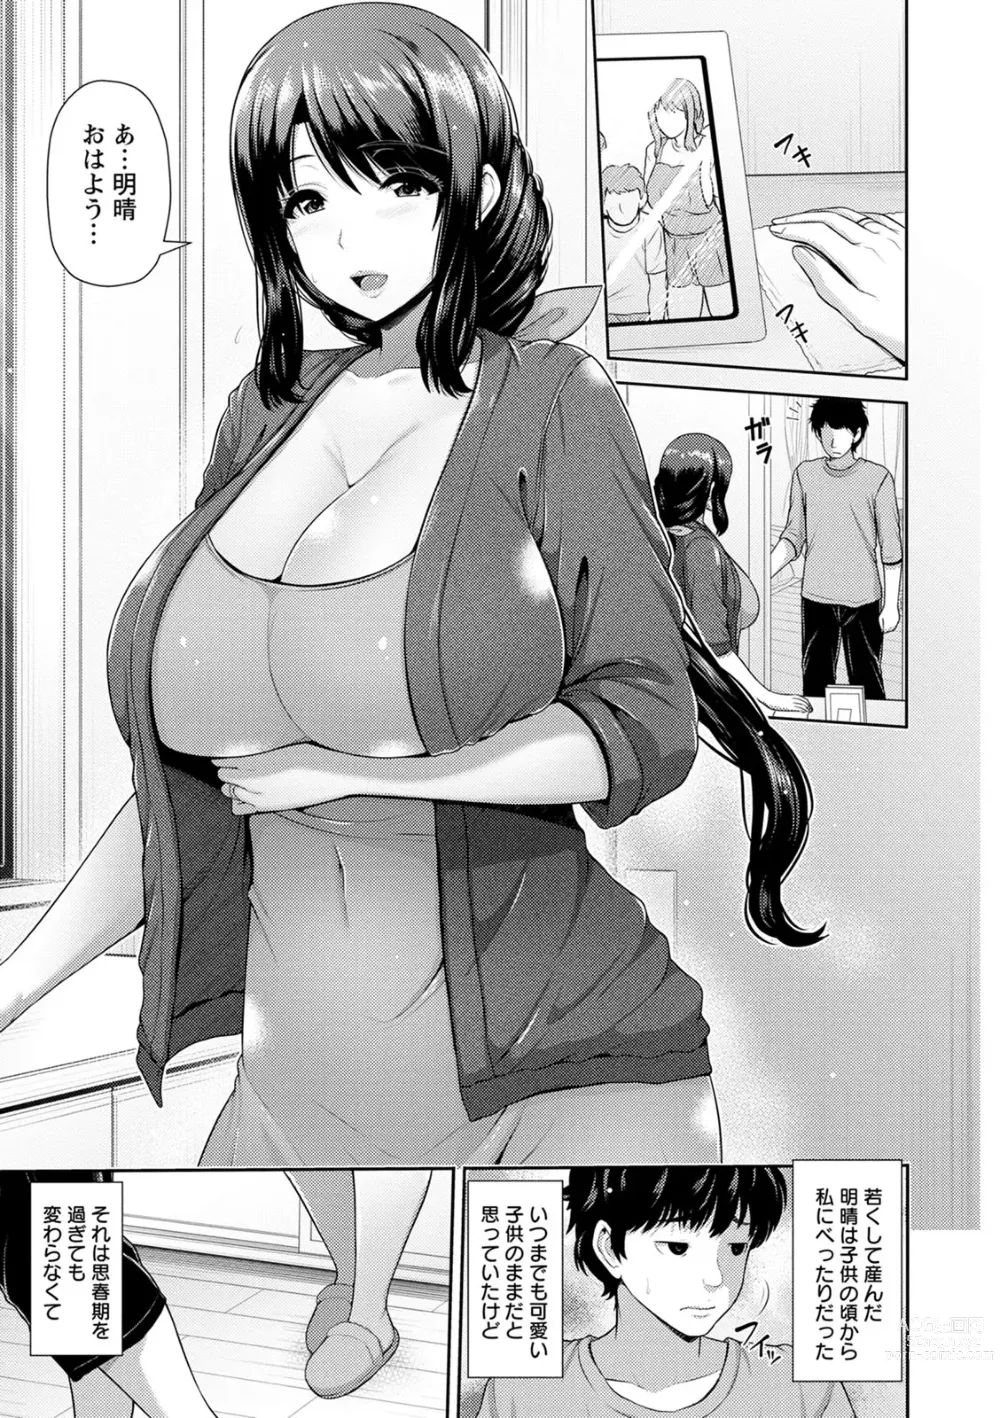 Page 7 of manga Shitsu Raku En